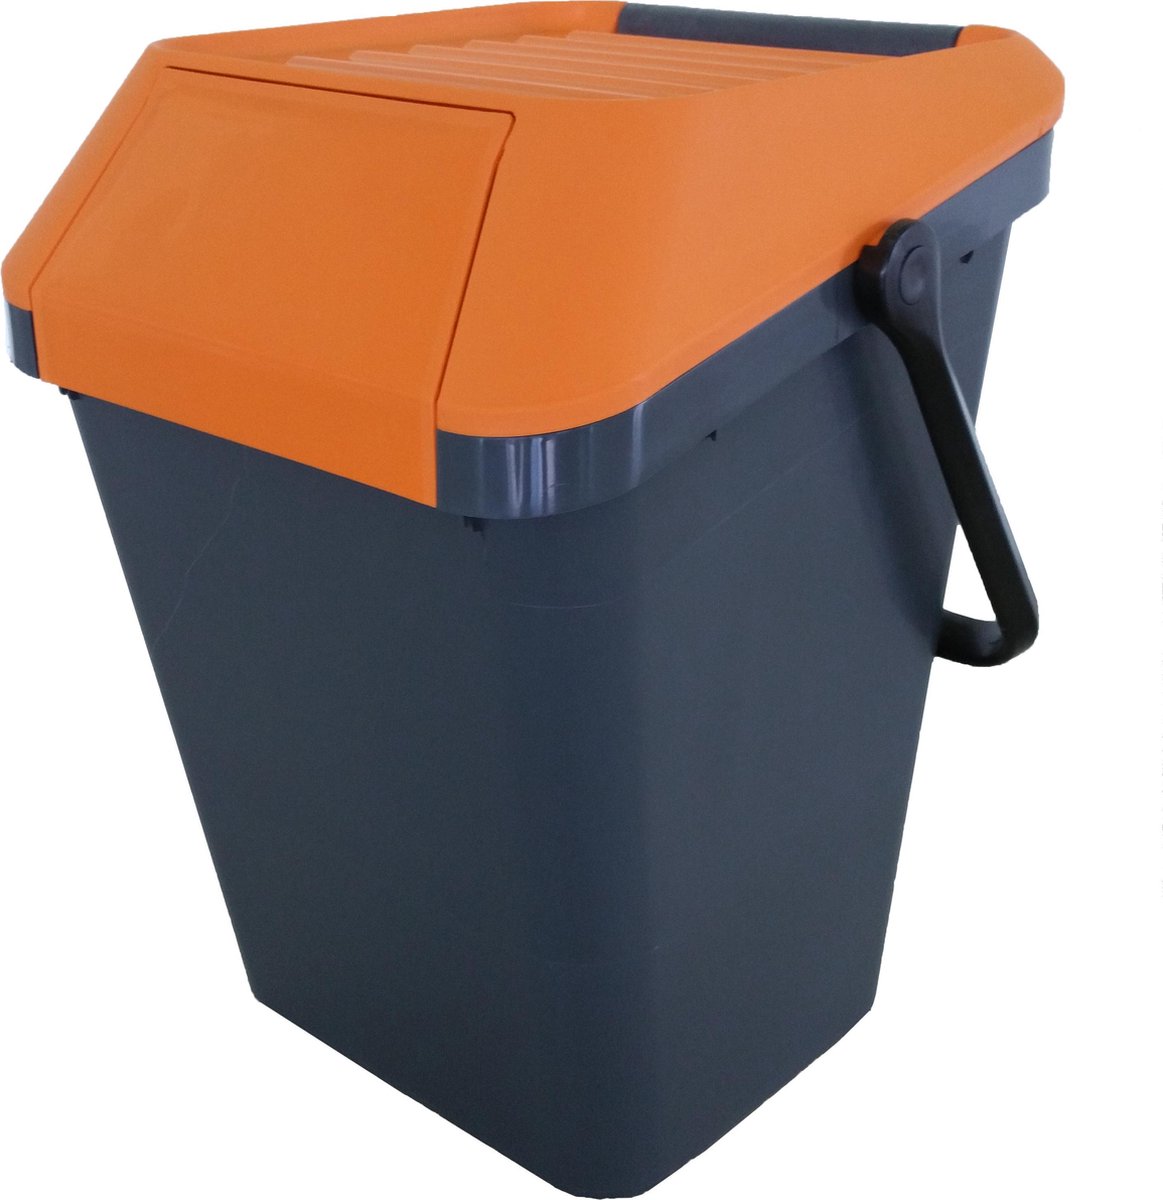 EasyMax afvalemmer 45 liter grijs, oranje